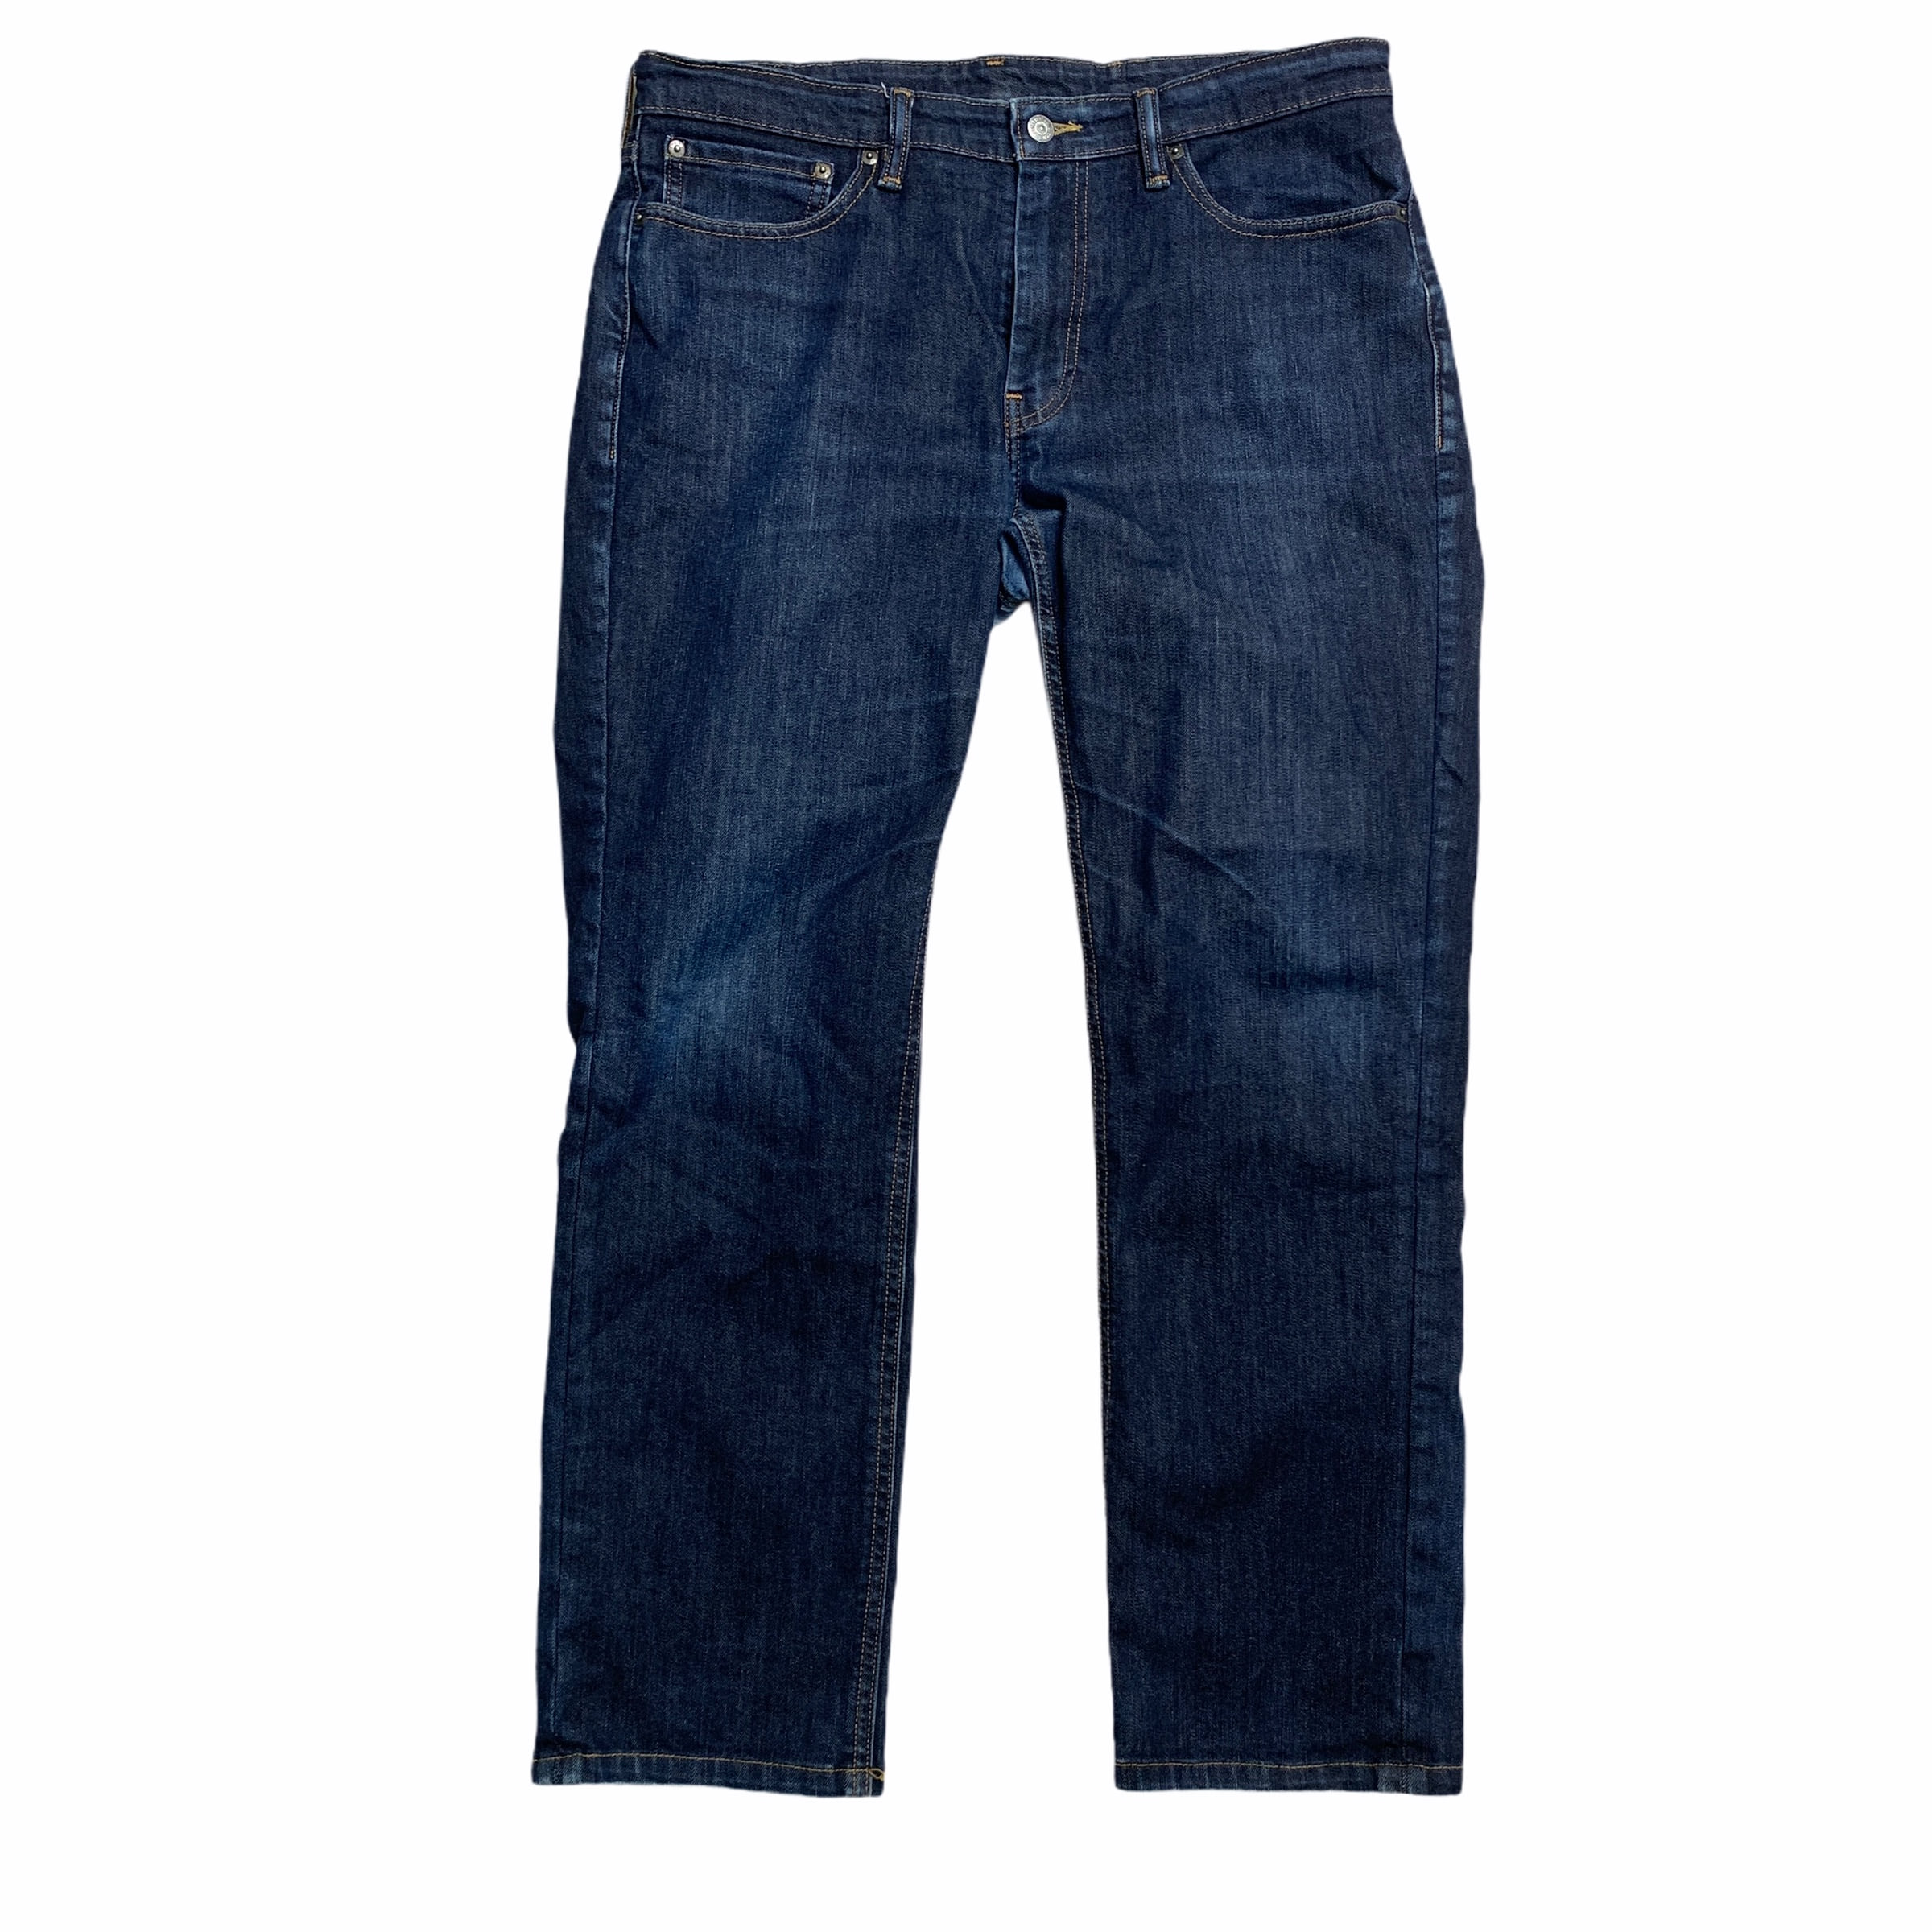 [Levis] (Vintage) 511 Denim pants - Size 36/34